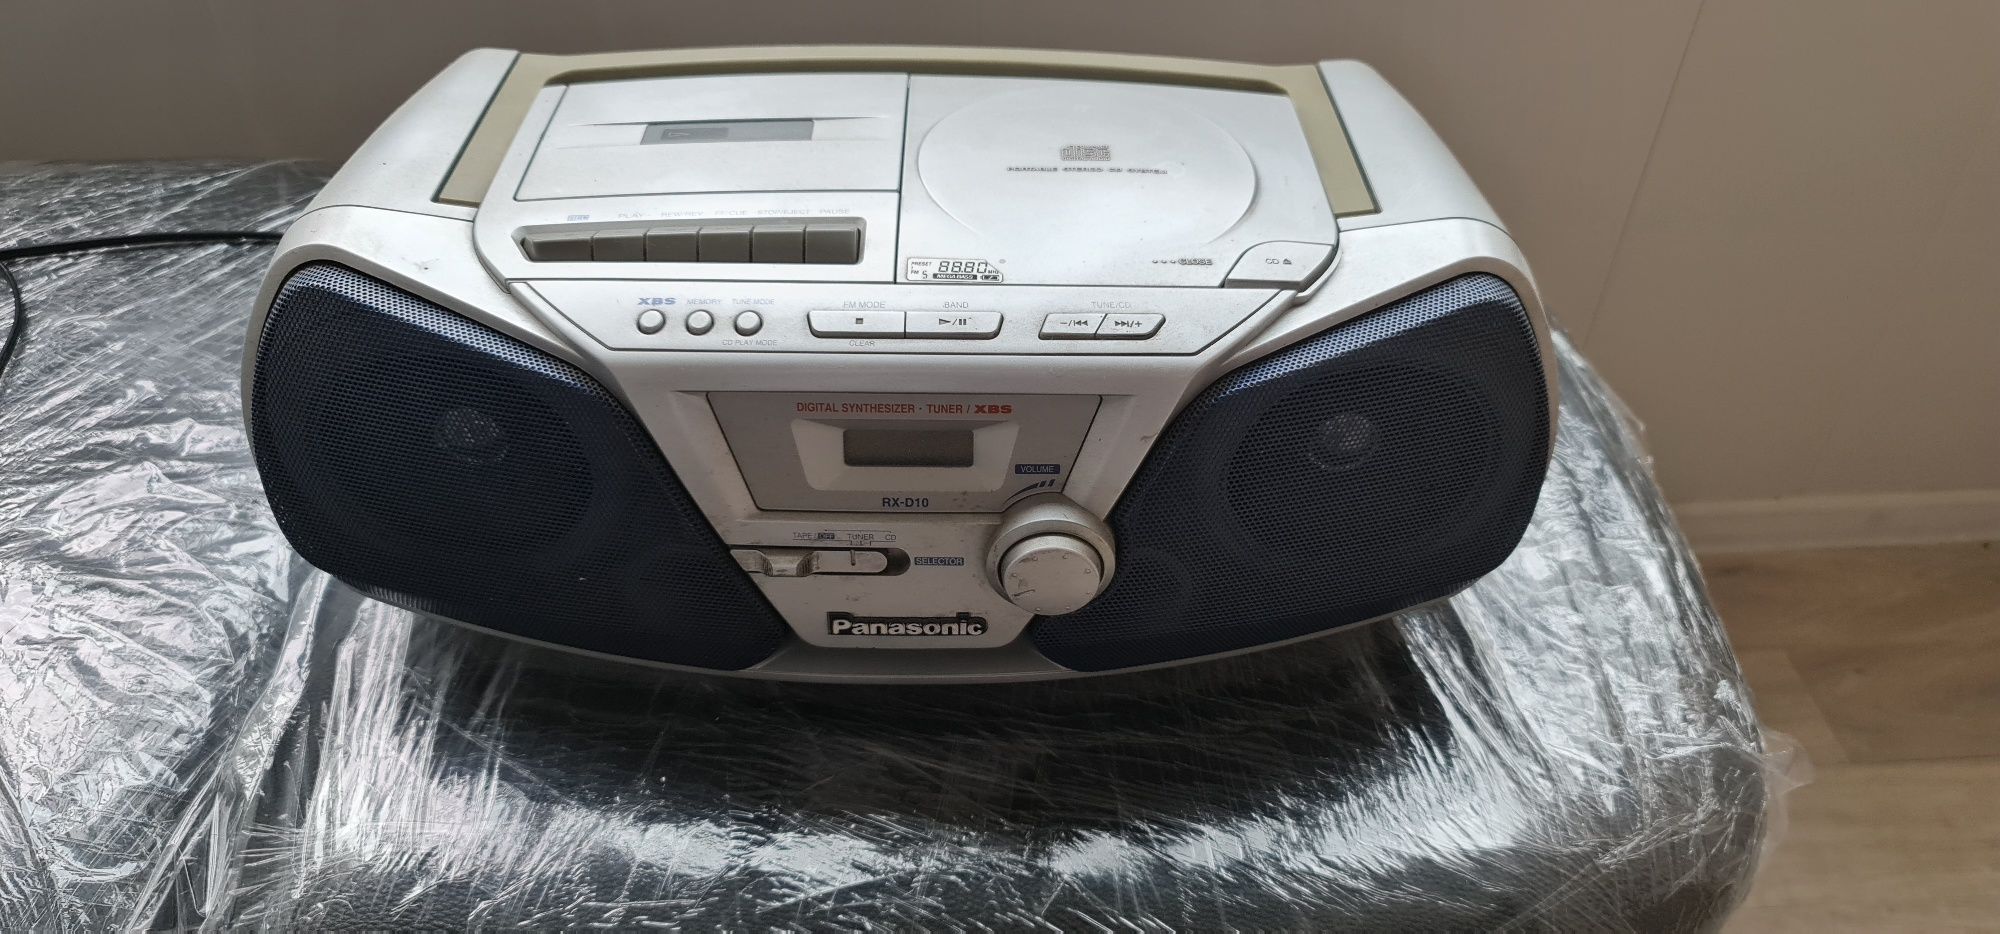 Магнитафон  CD FM Tape магнитола радио